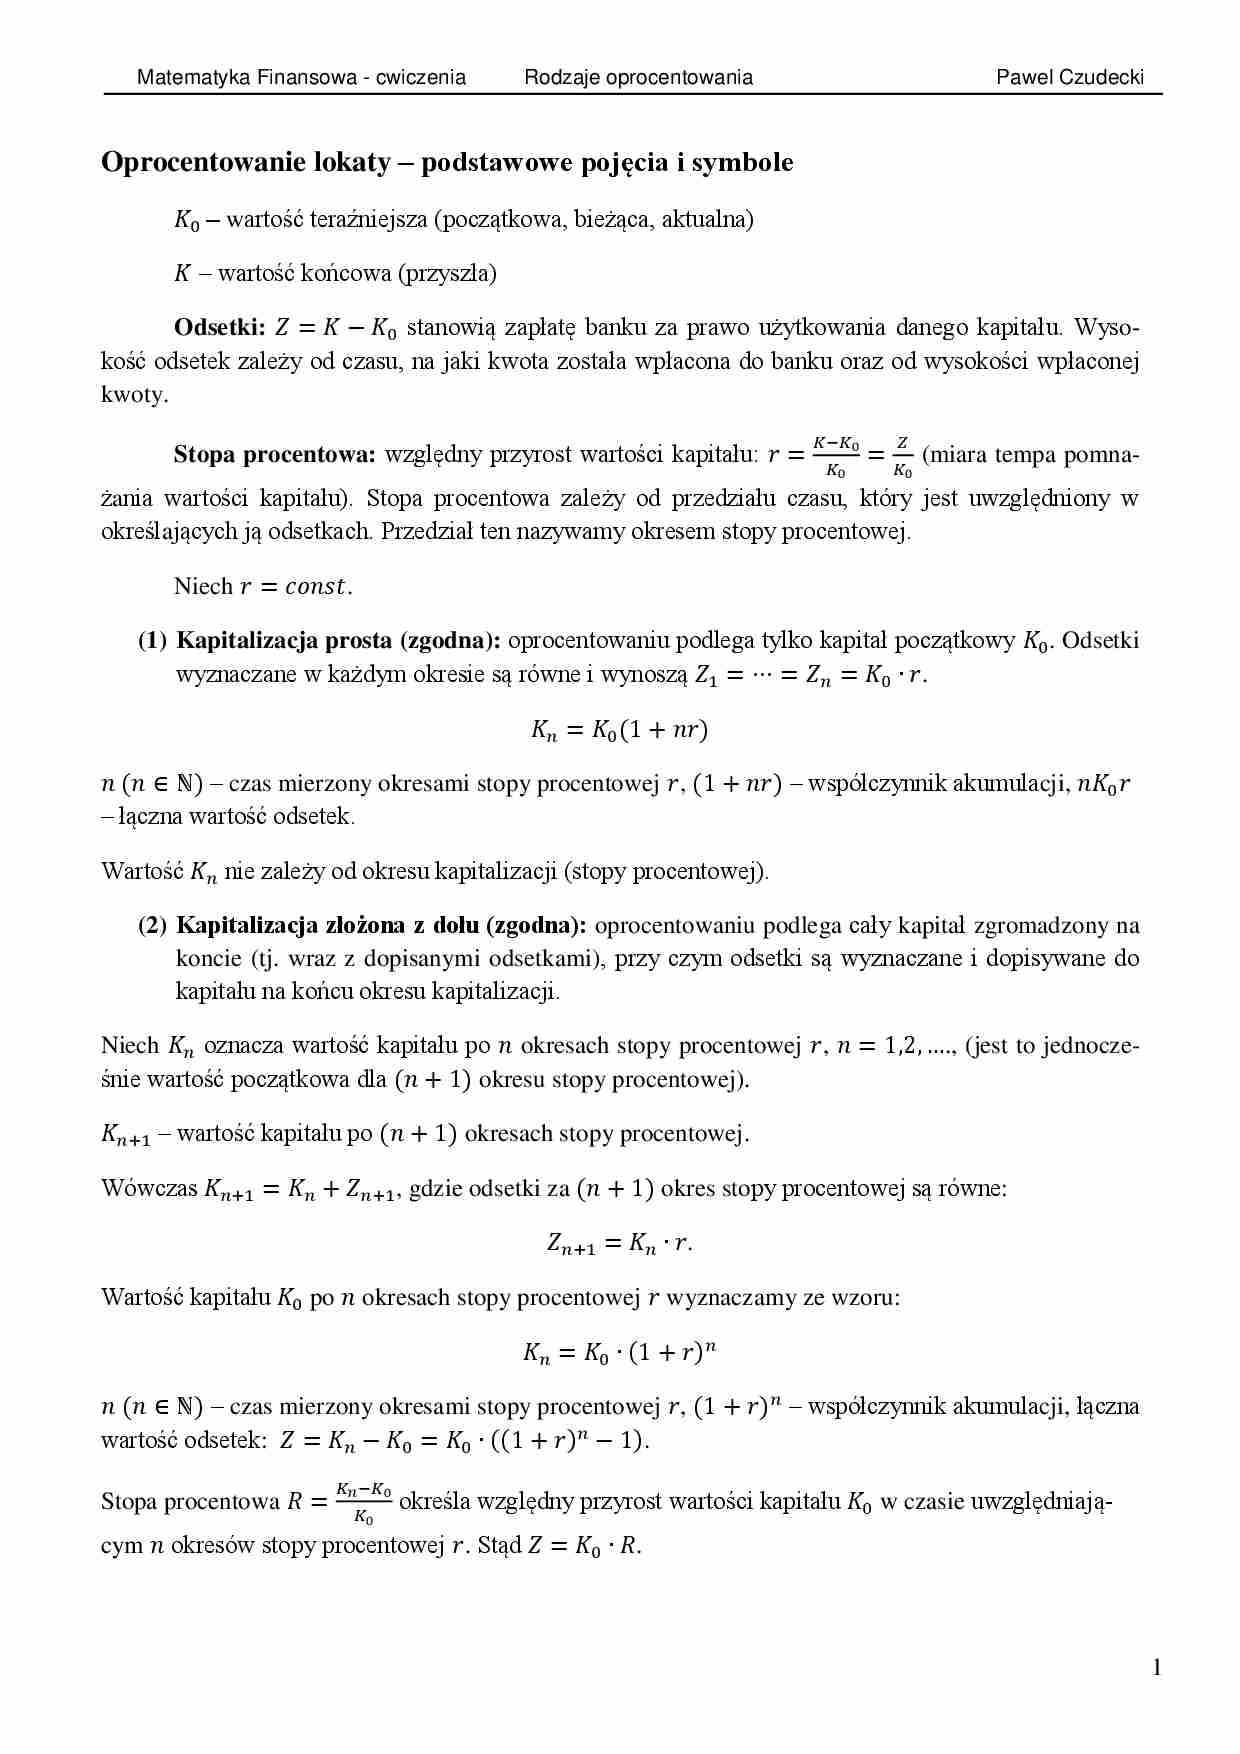 Matematyka finansowa - oprocentowanie lokat ĆWICZENIA - strona 1